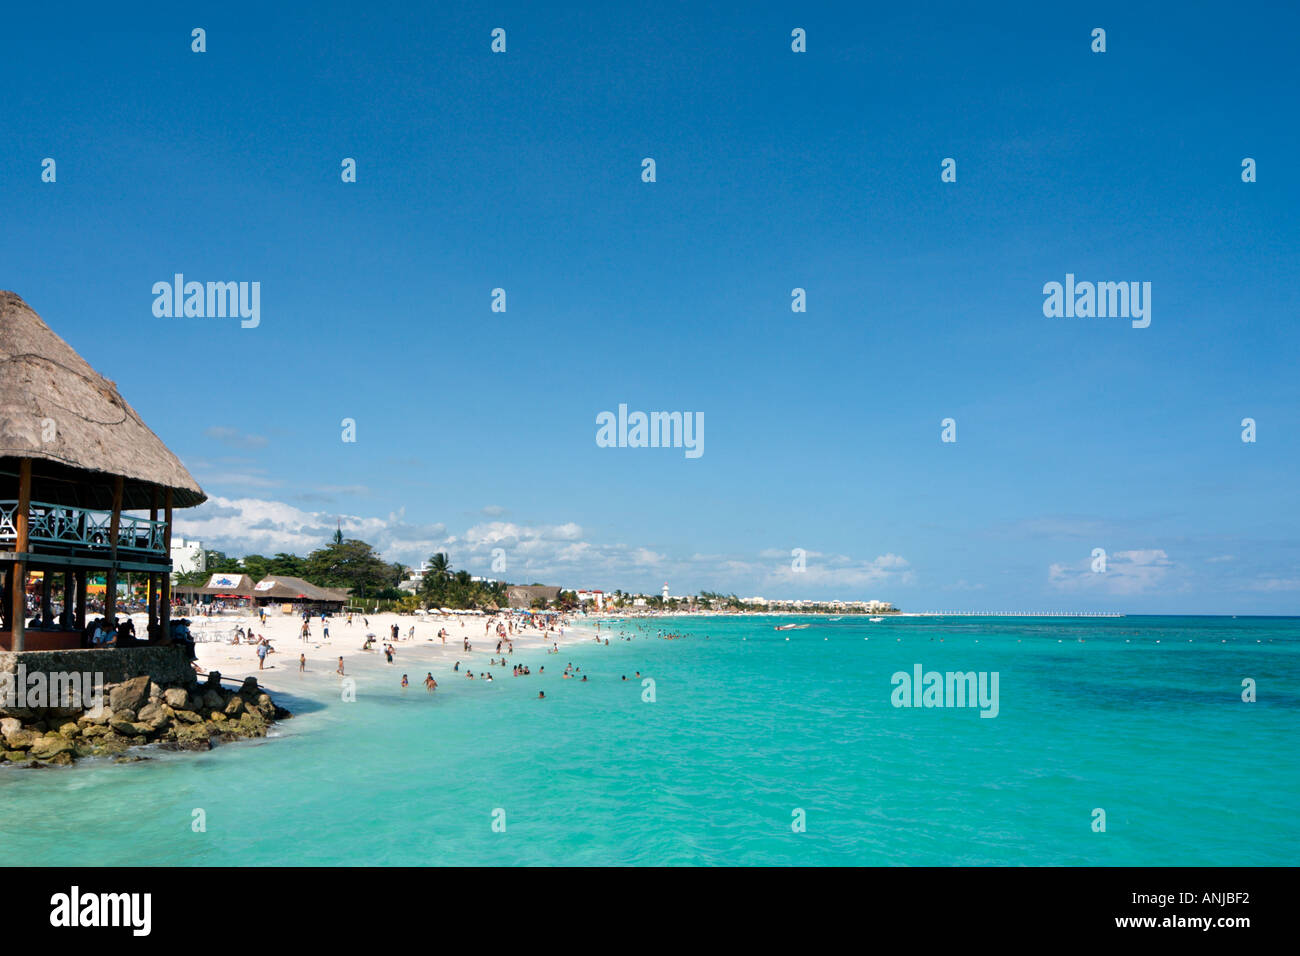 Beach, Playa del Carmen, Riviera Maya, Yucatan Peninsula, Mexico Stock Photo